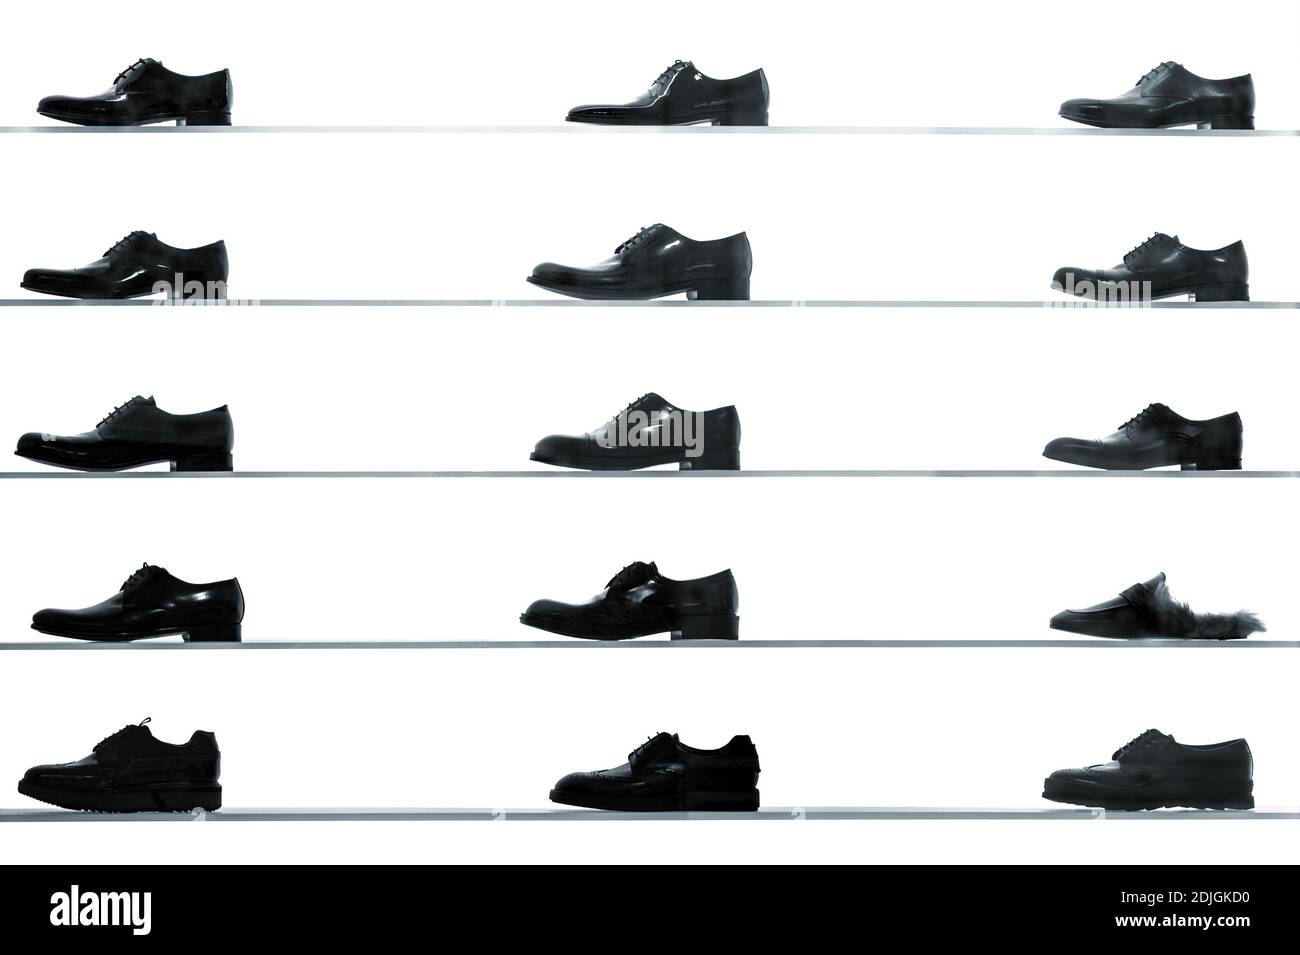 Männer Schuhe shop Regale angezeigt zurück gegen lit weißen Hintergrund. Hoher Kontrast schwarz und weiß abstrakten Bild Stockfoto